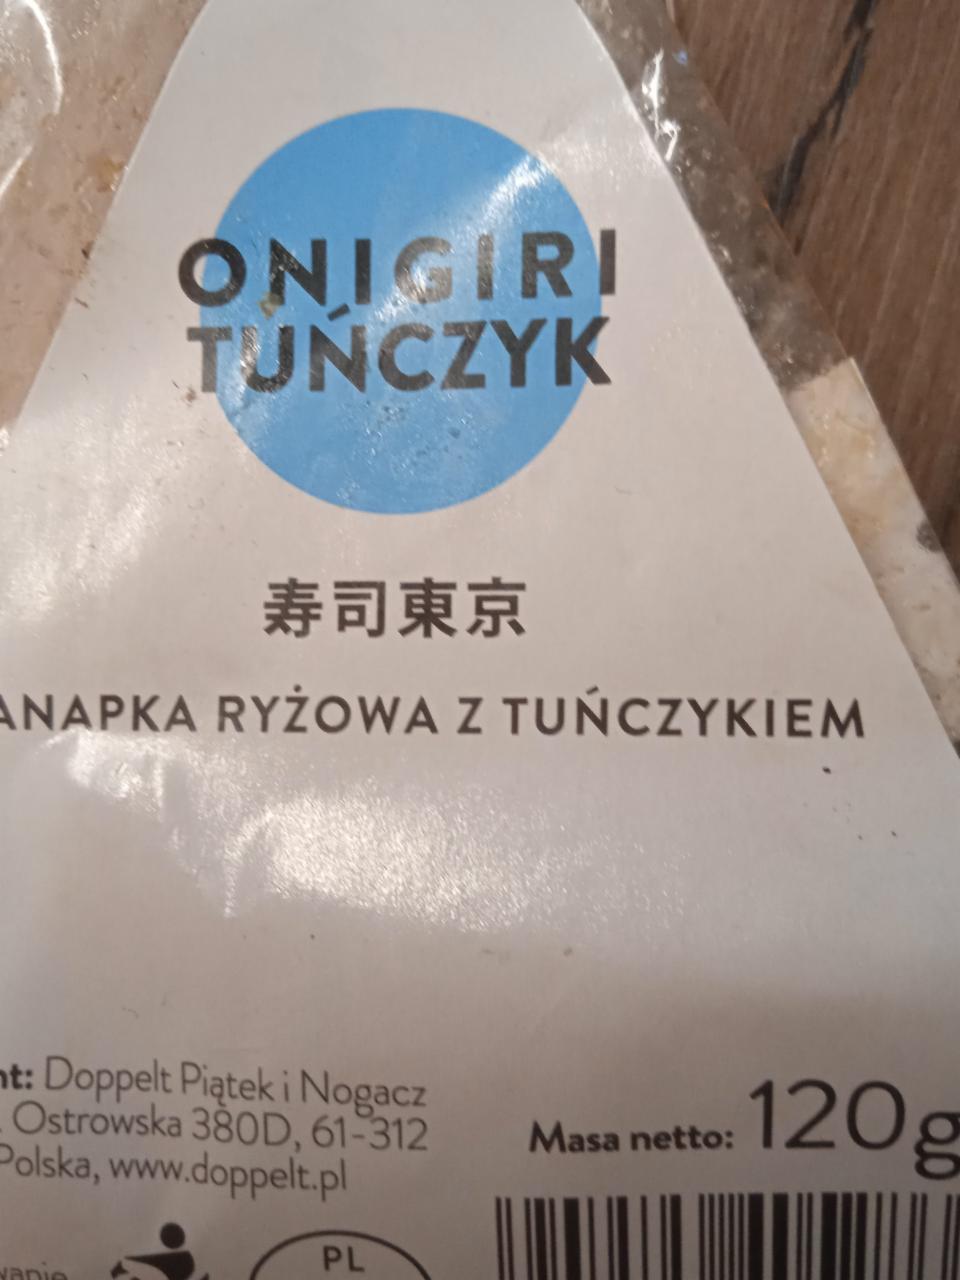 Zdjęcia - kanapka ryżowa z tuńczykiem Onigiri Tuńczyk